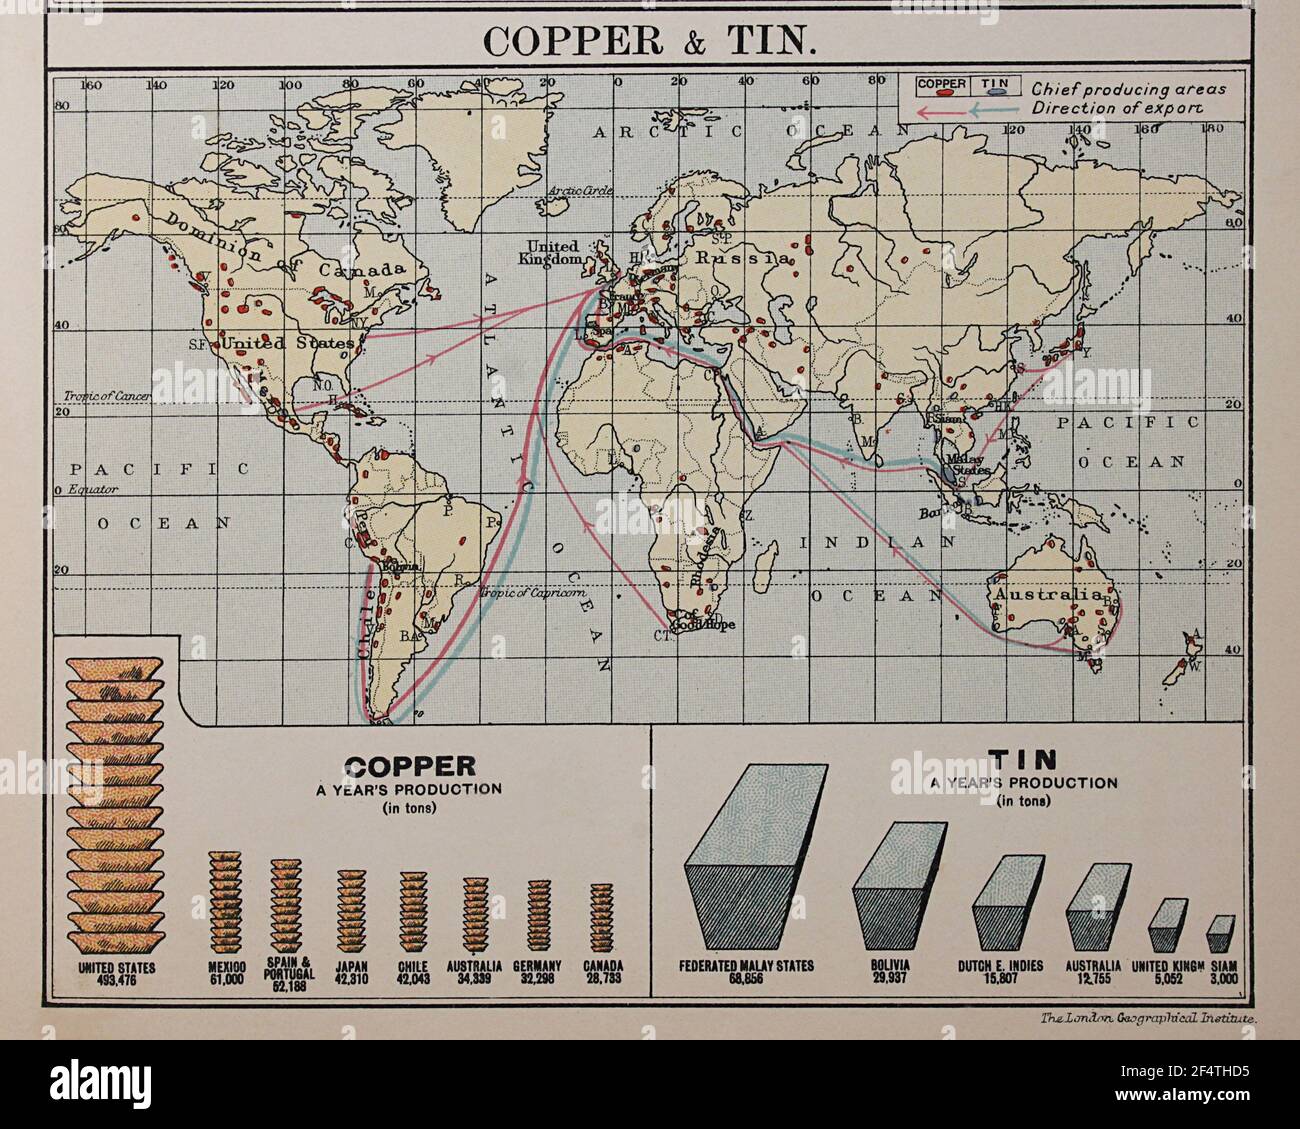 Weltkarte aus 'Philip's Chamber of Commerce Atlas', 1912, zeigt Kupfer- und Zinnproduktion. Stockfoto